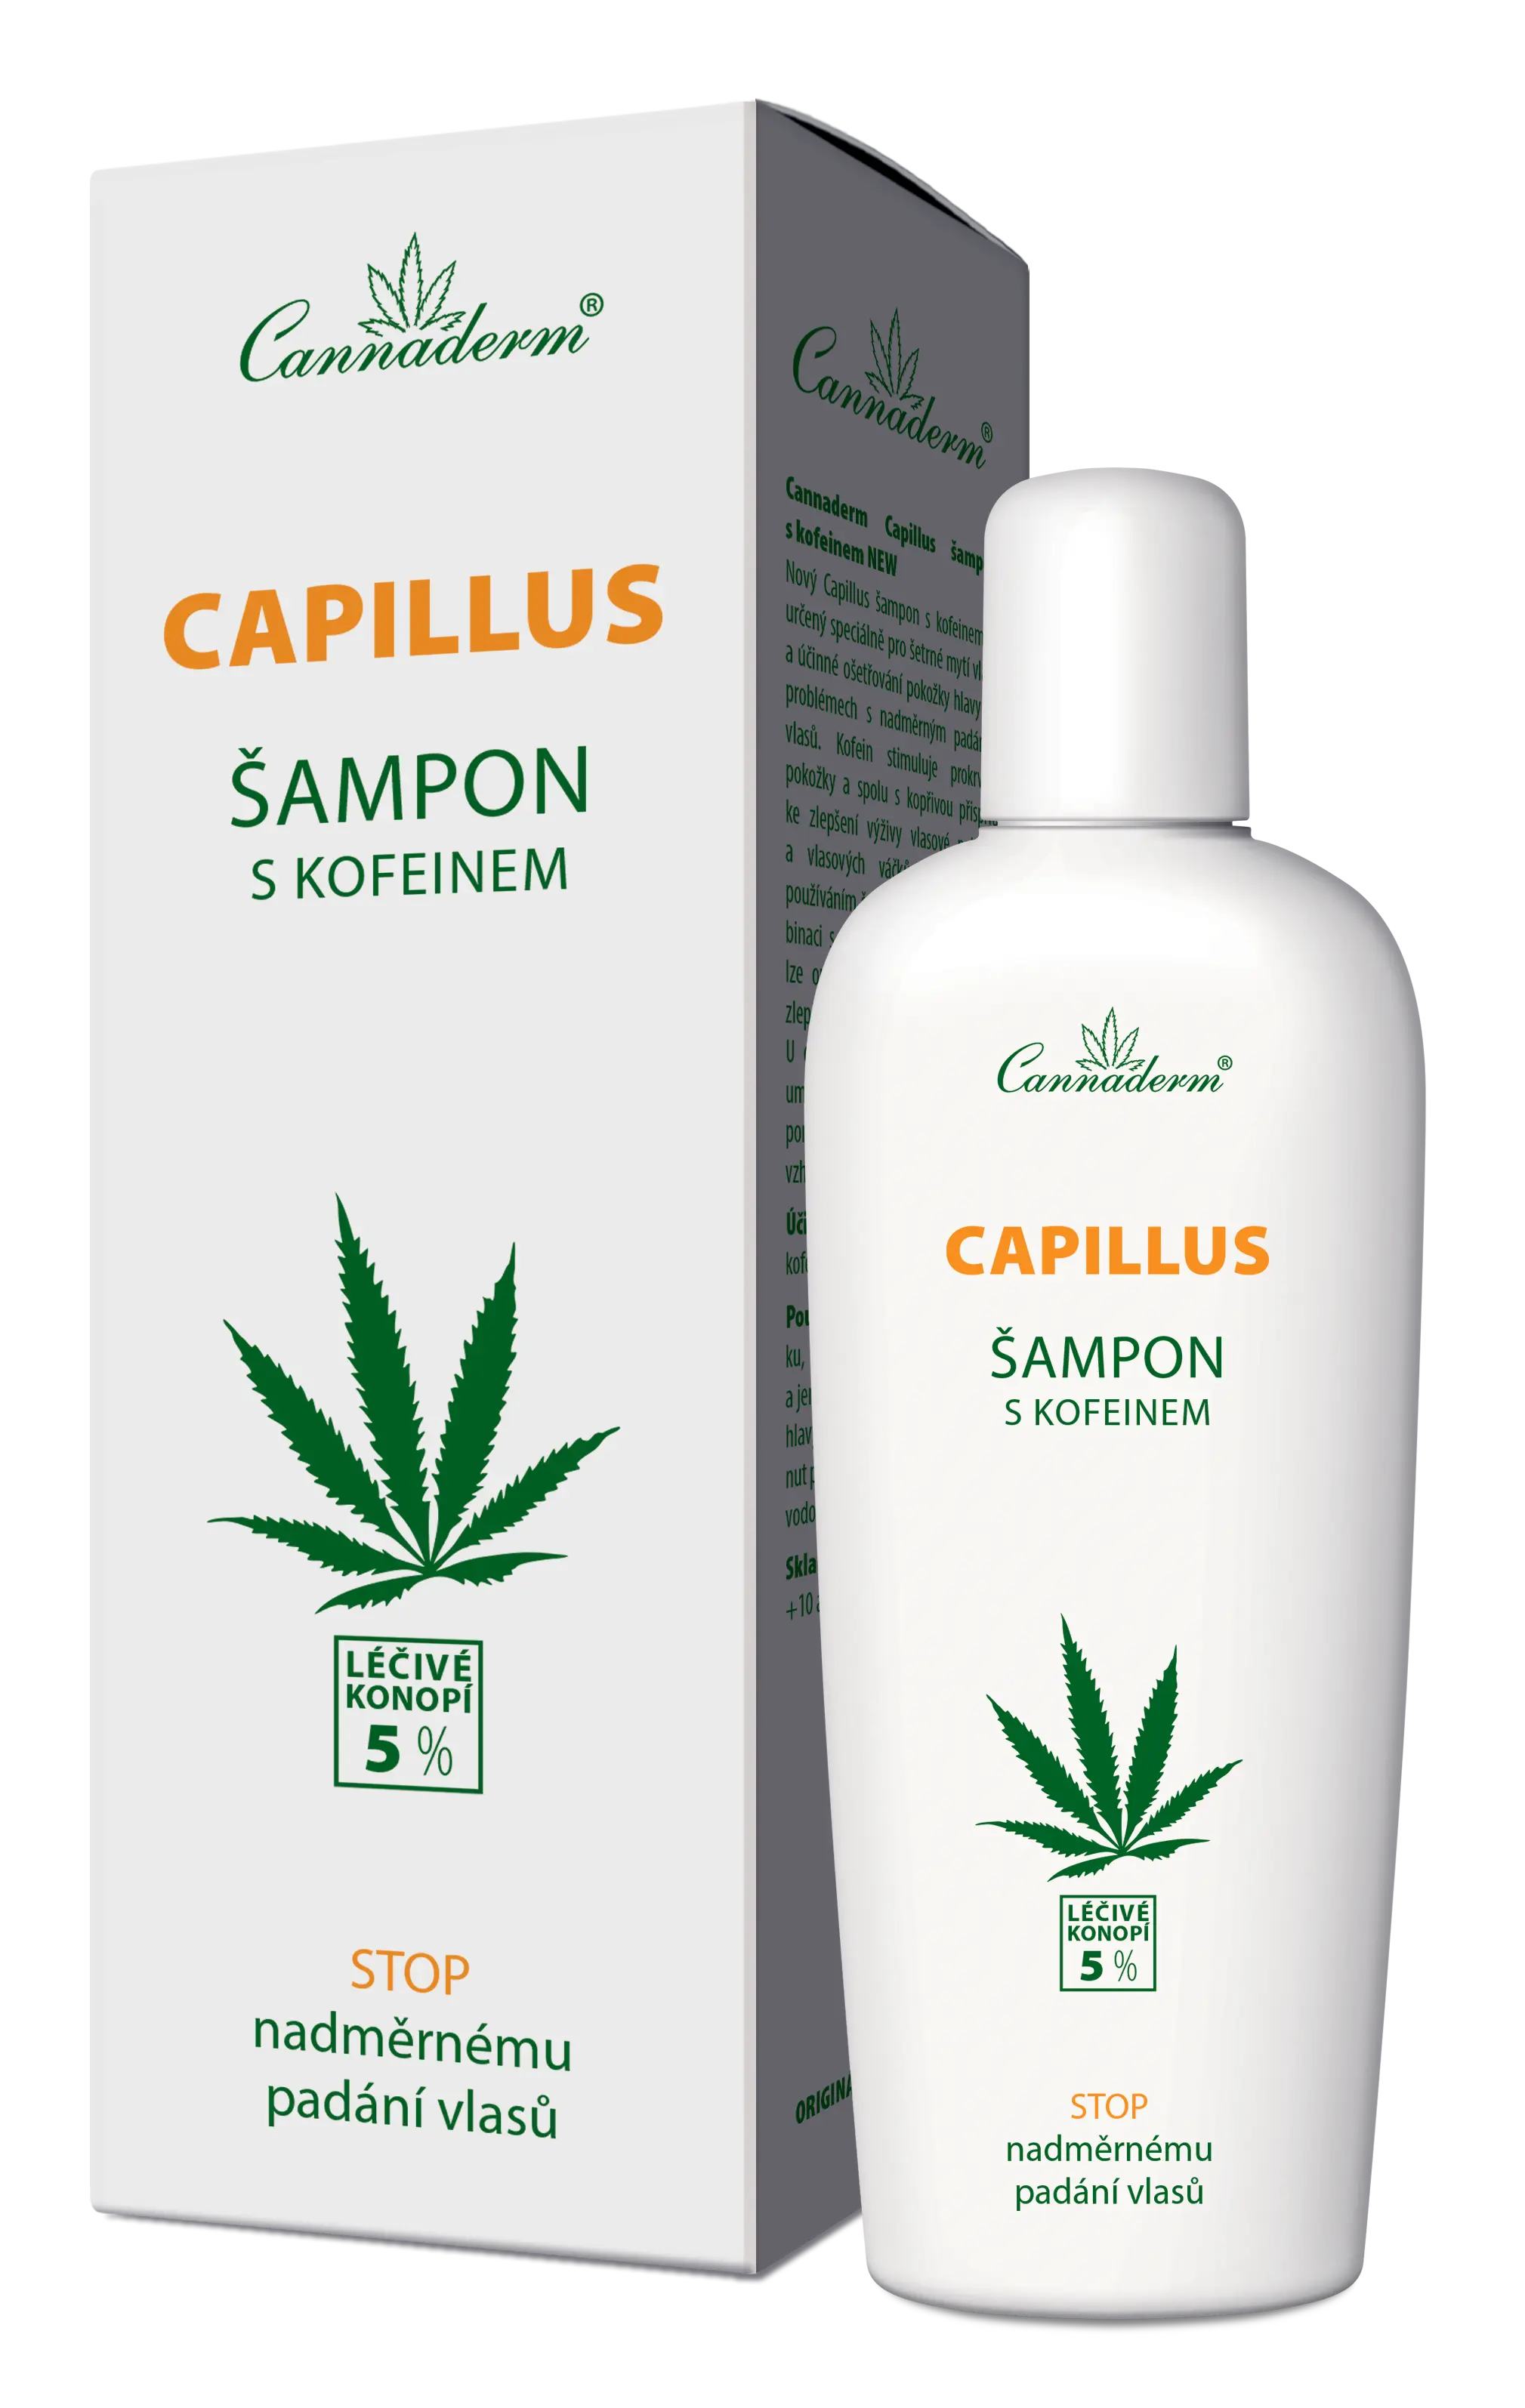 Cannaderm stimulační šampon s kofeinem Capillus 150 ml